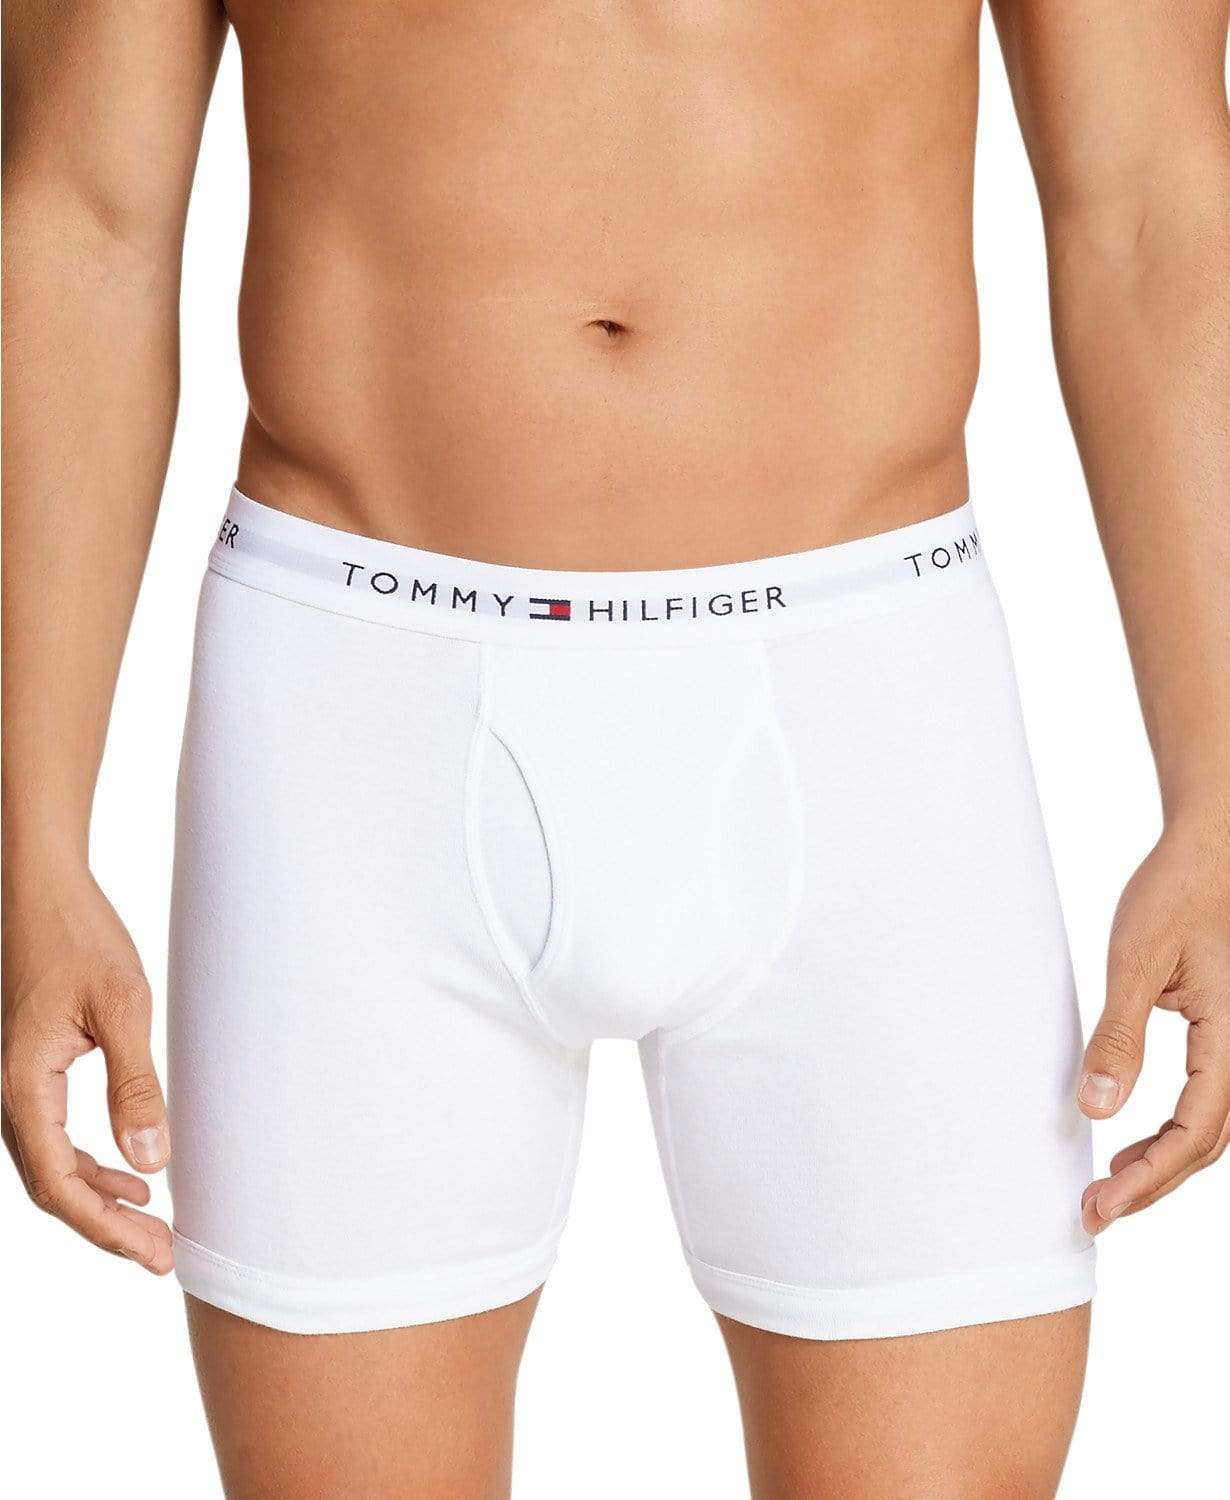 Tommy Hilfiger Mens Underwear S / White Cotton Boxer